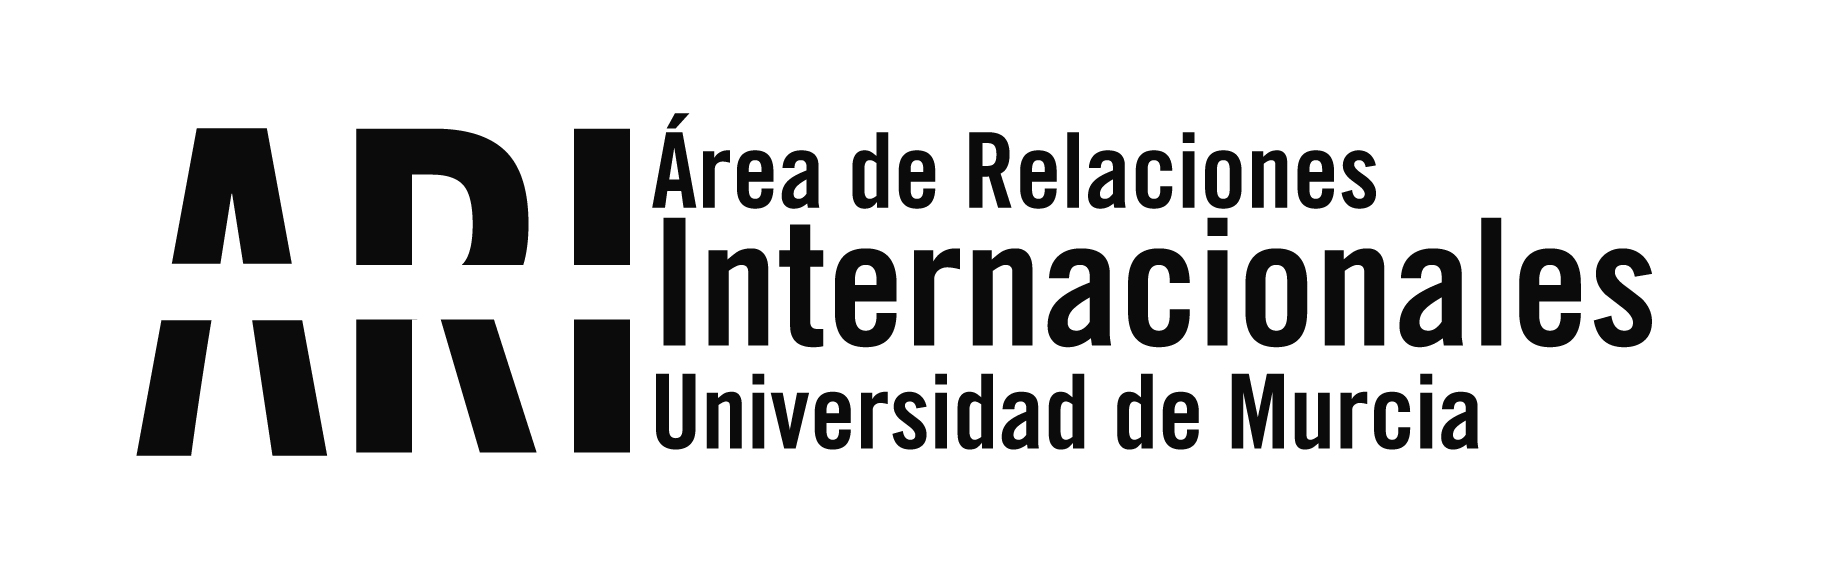 Murcia se vuelca en la celebración del 30 Aniversario del Programa Erasmus - Área de Relaciones Internacionales